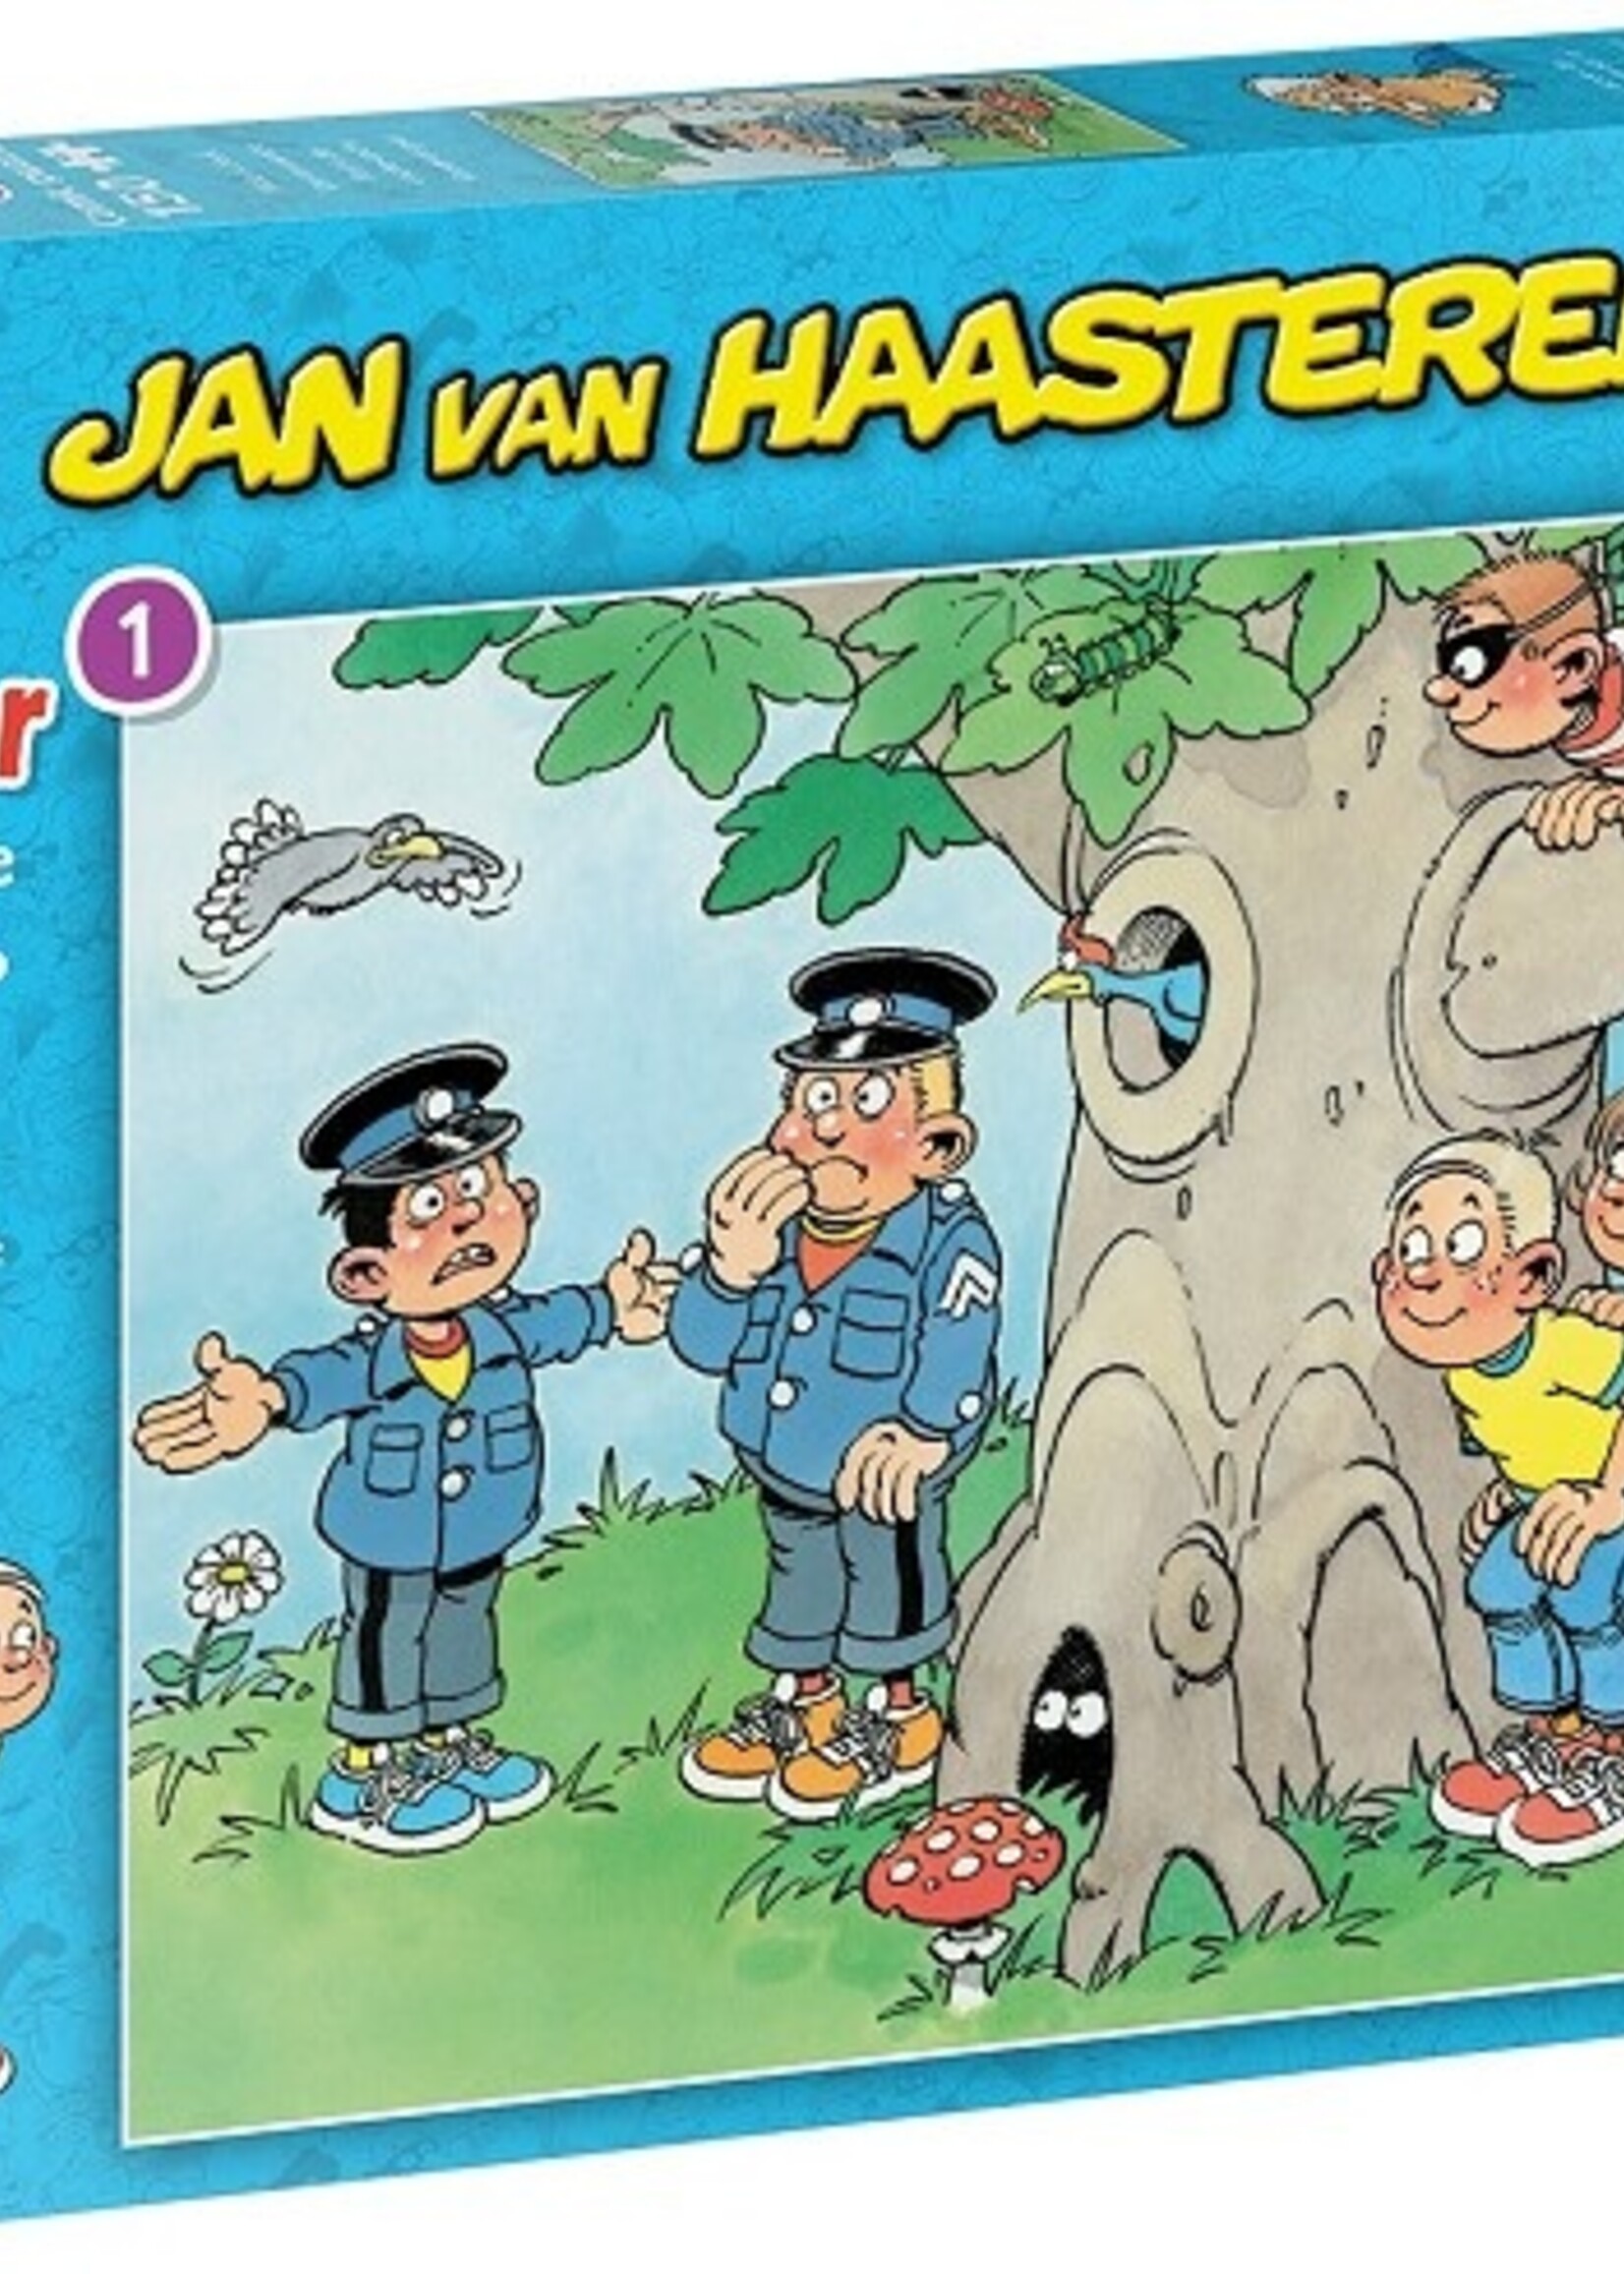 Jumbo Jan van Haasteren Junior puzzel Verstoppertje 150 stukjes